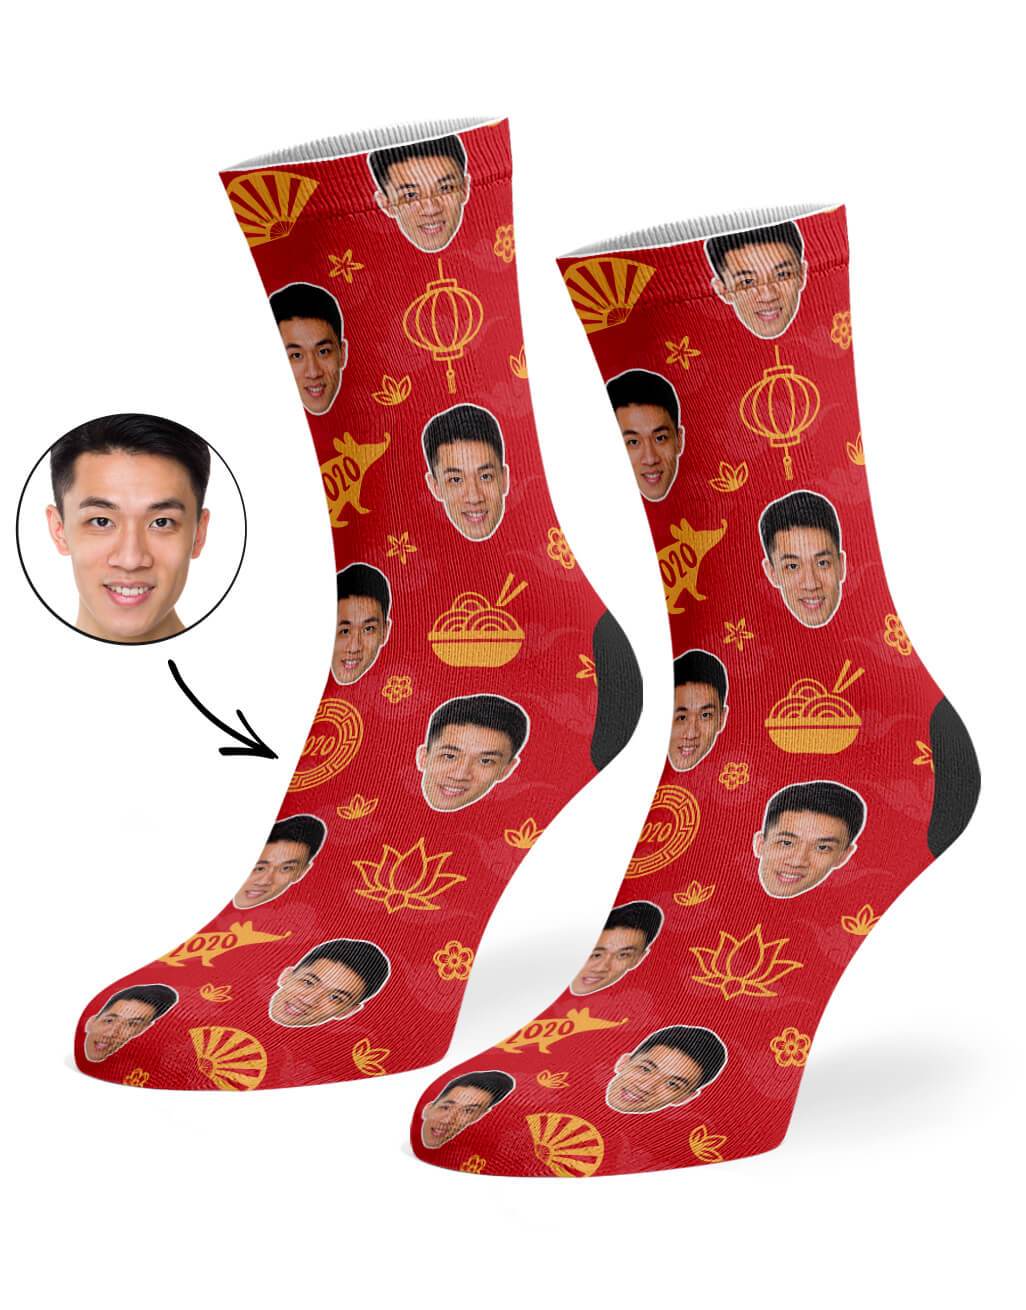 2020 Chinese New Year Custom Socks